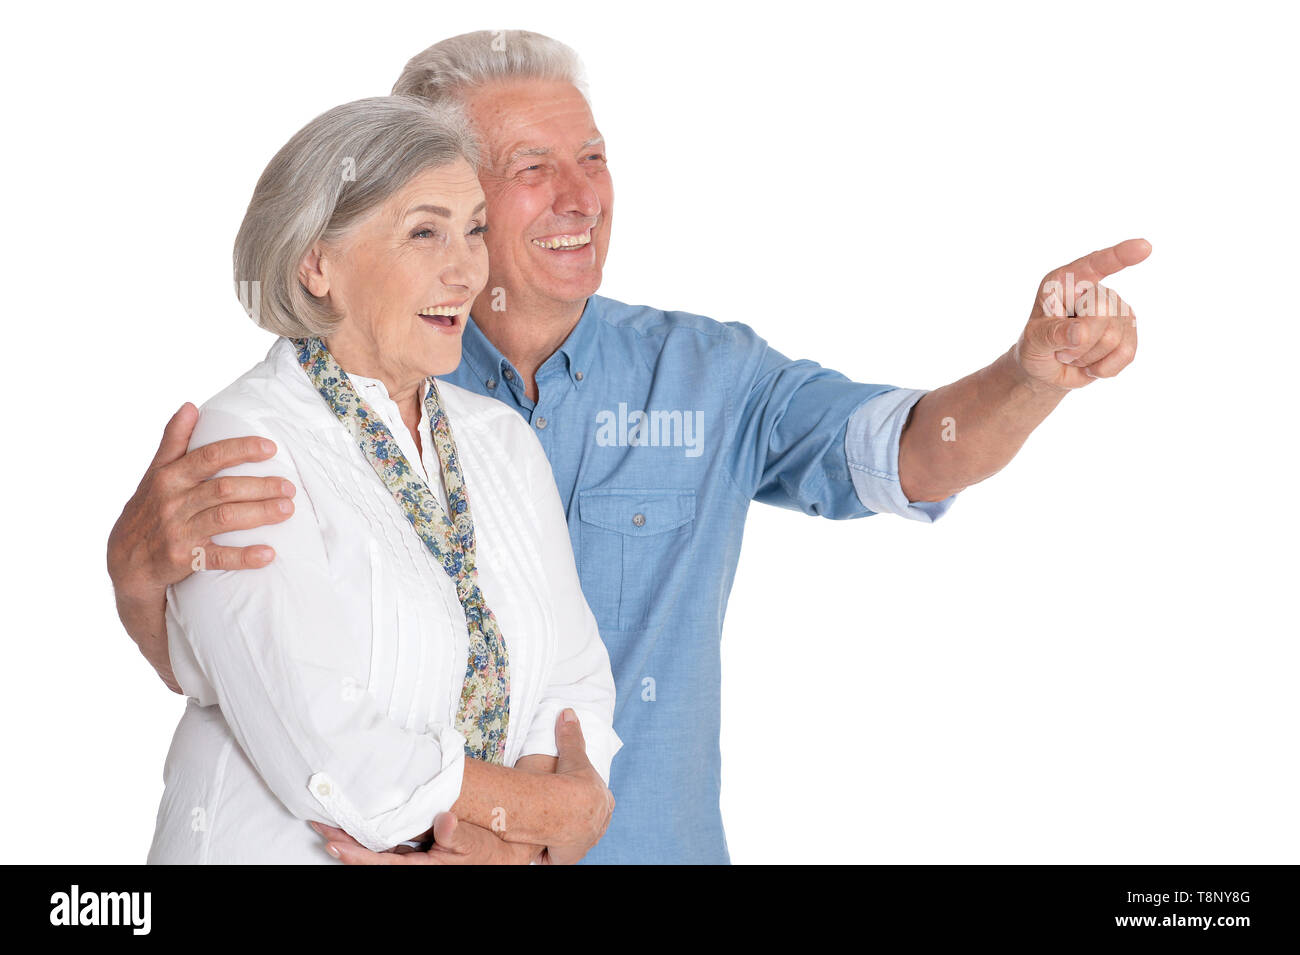 Portrait of happy senior couple isolated on white background Stock Photo